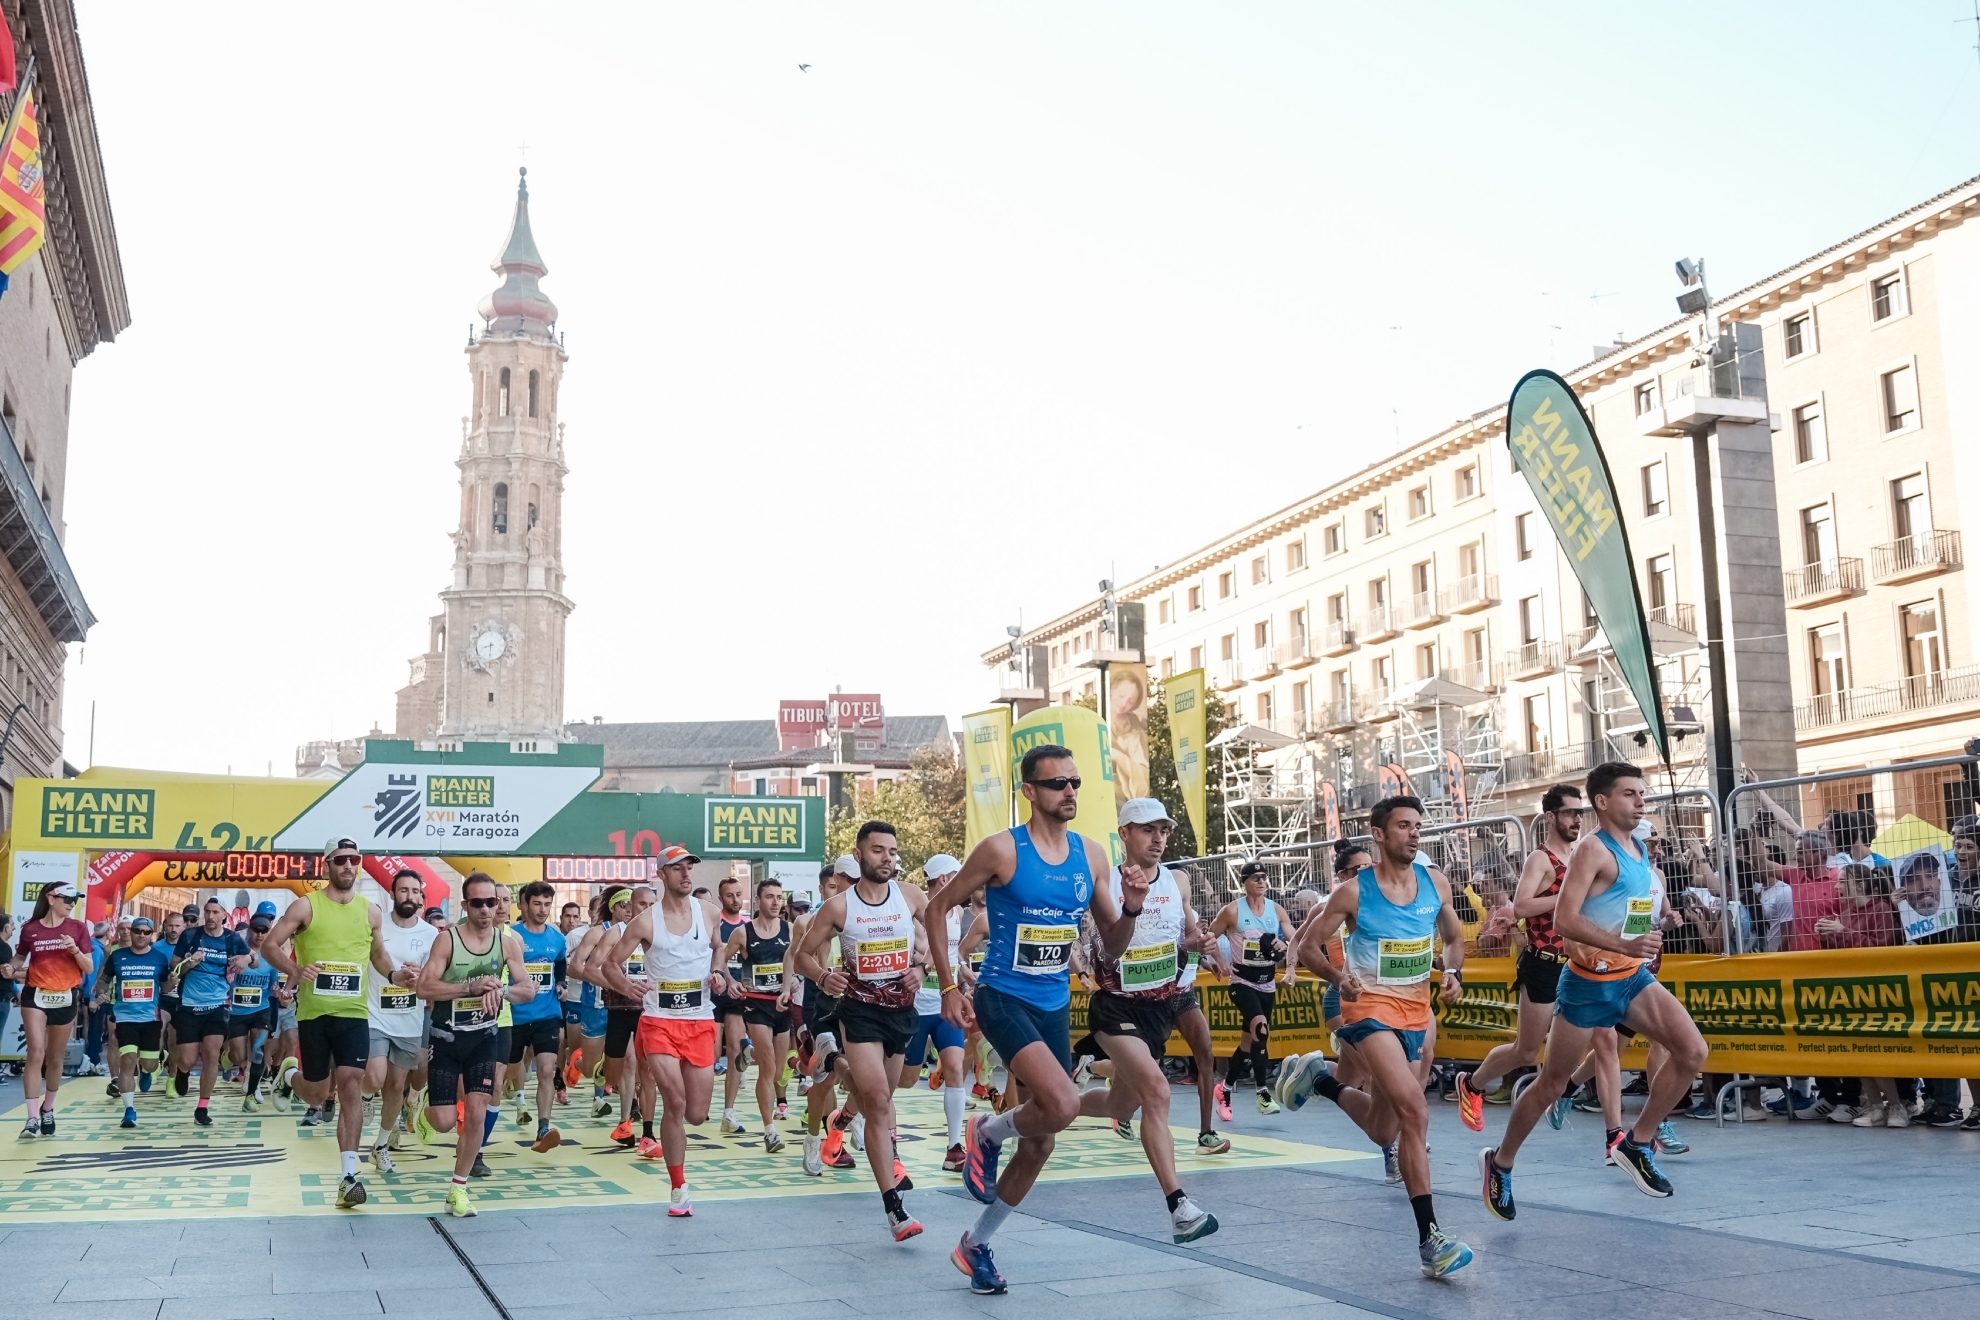 Jimnez, Jeptoo, Mayo y Espejo reinan en el maratn de Zaragoza ms multitudinario de la historia